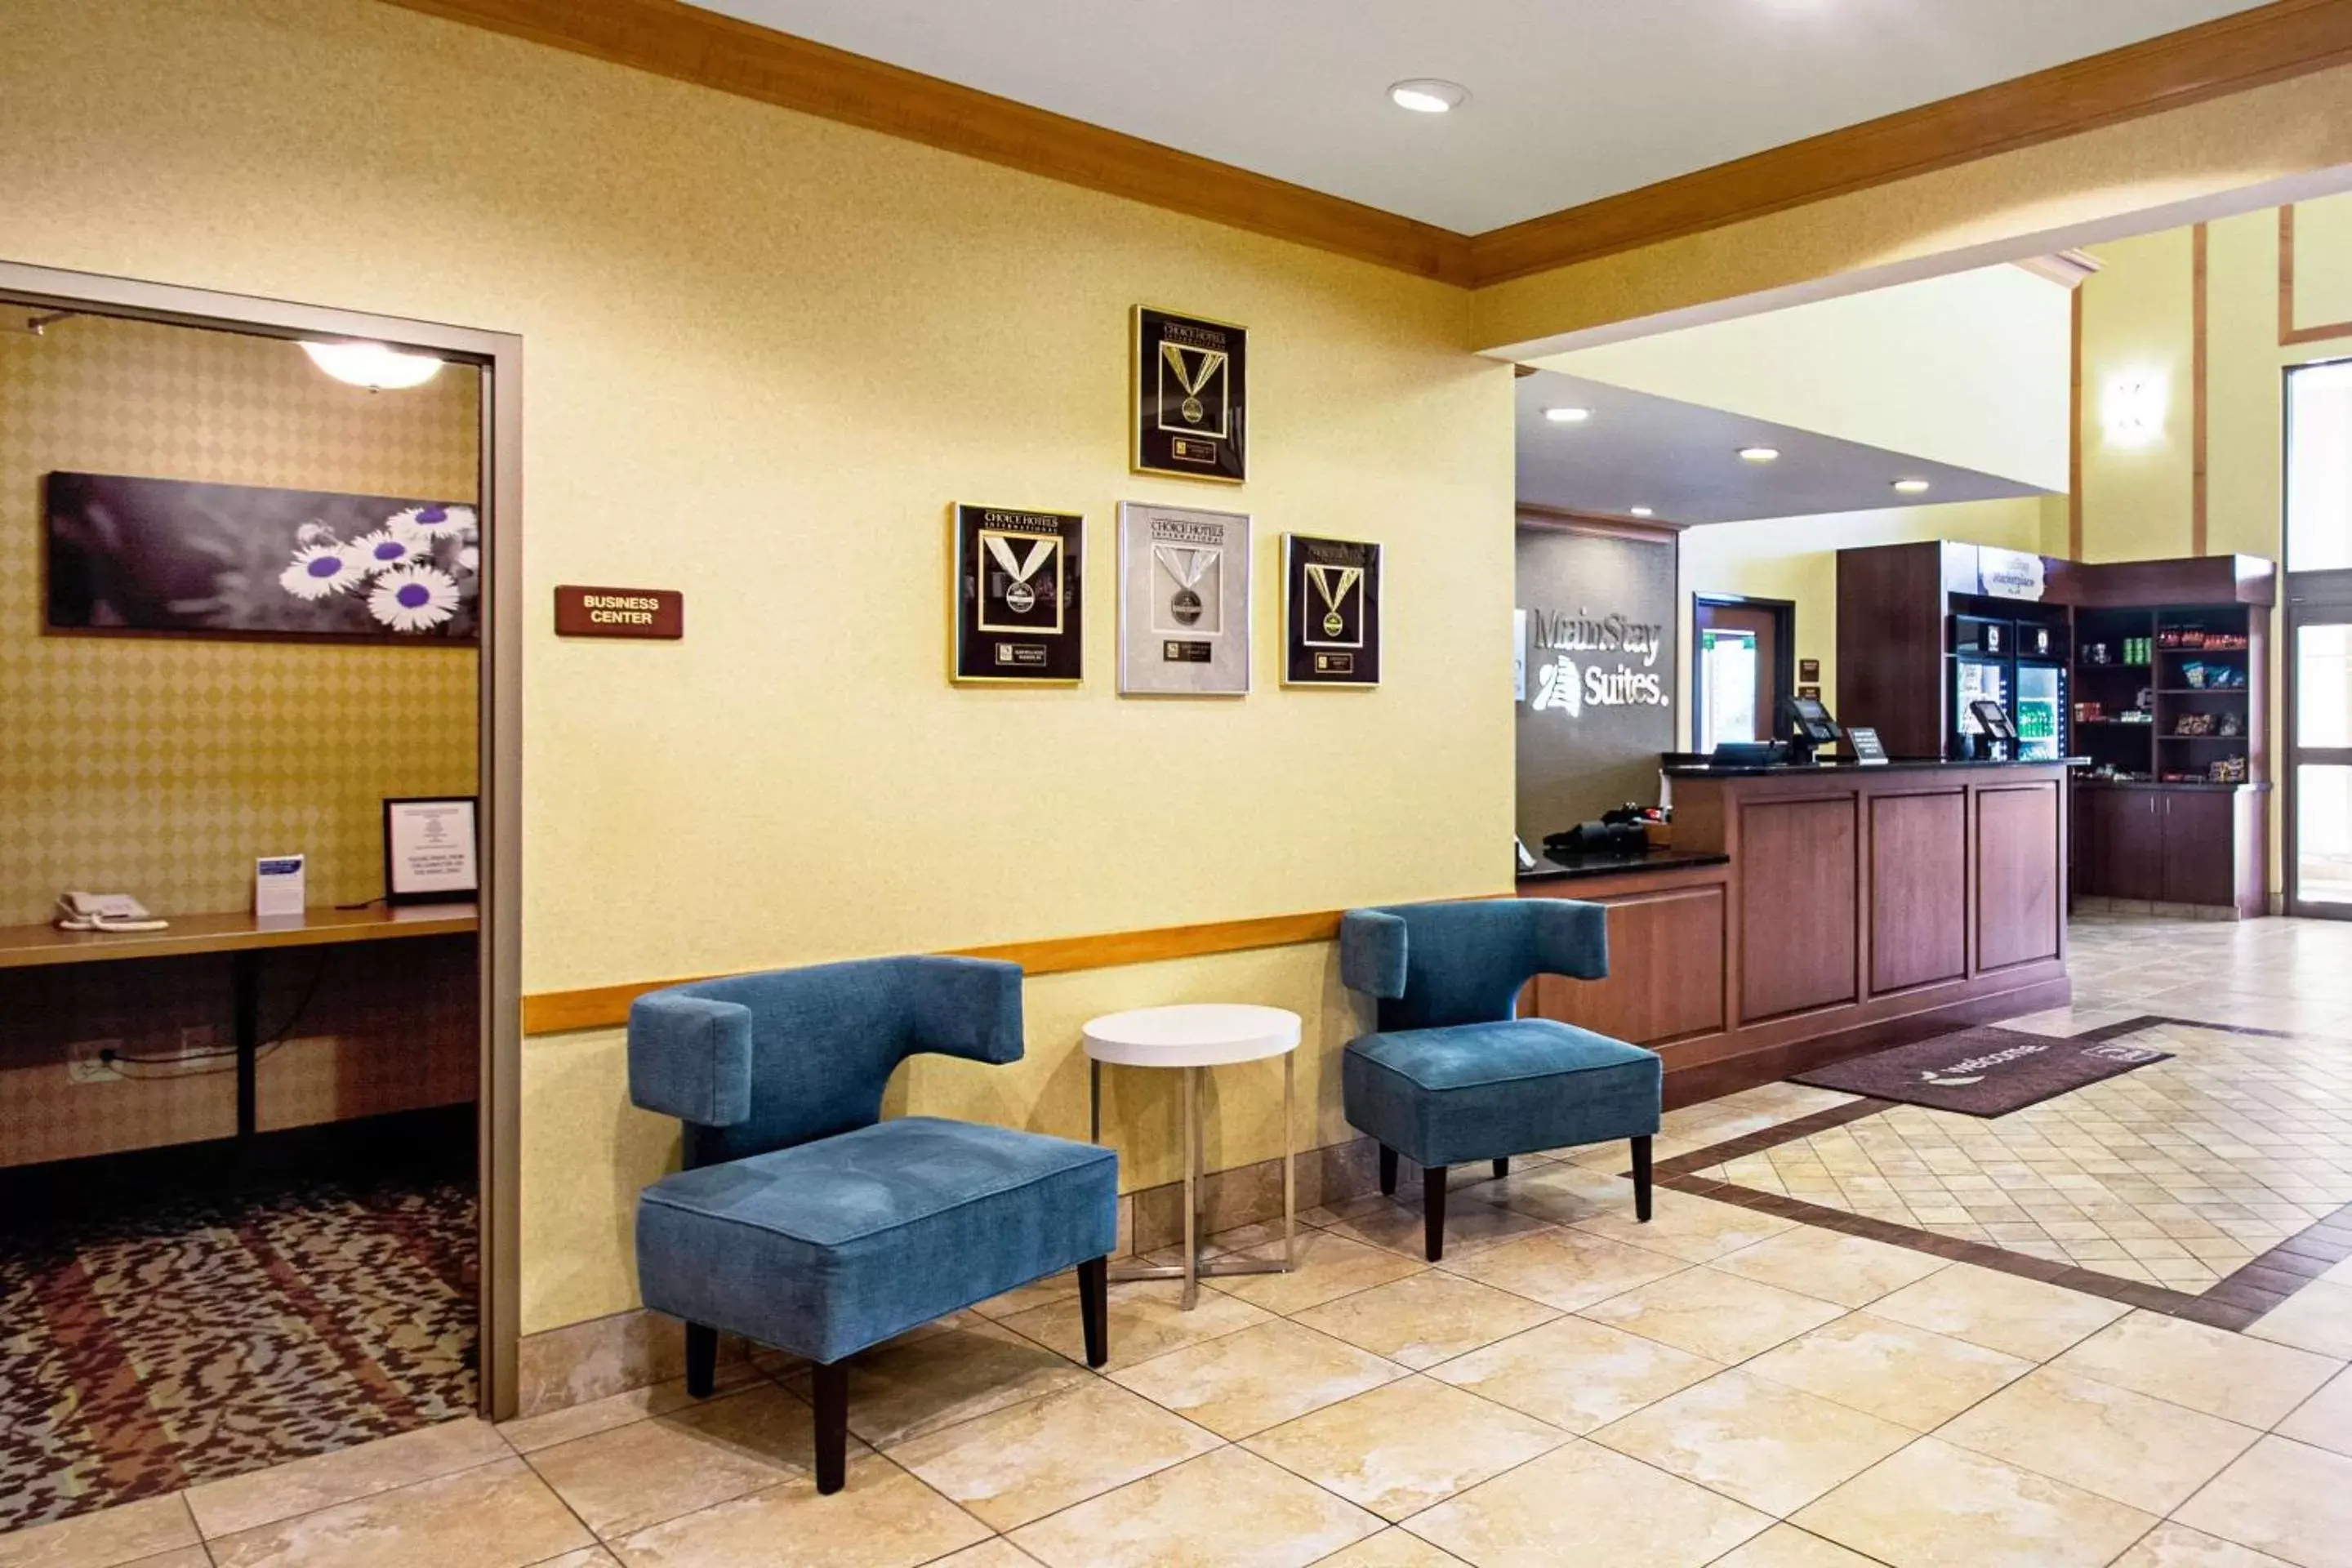 Lobby or reception, Lobby/Reception in Sleep Inn & Suites Madison